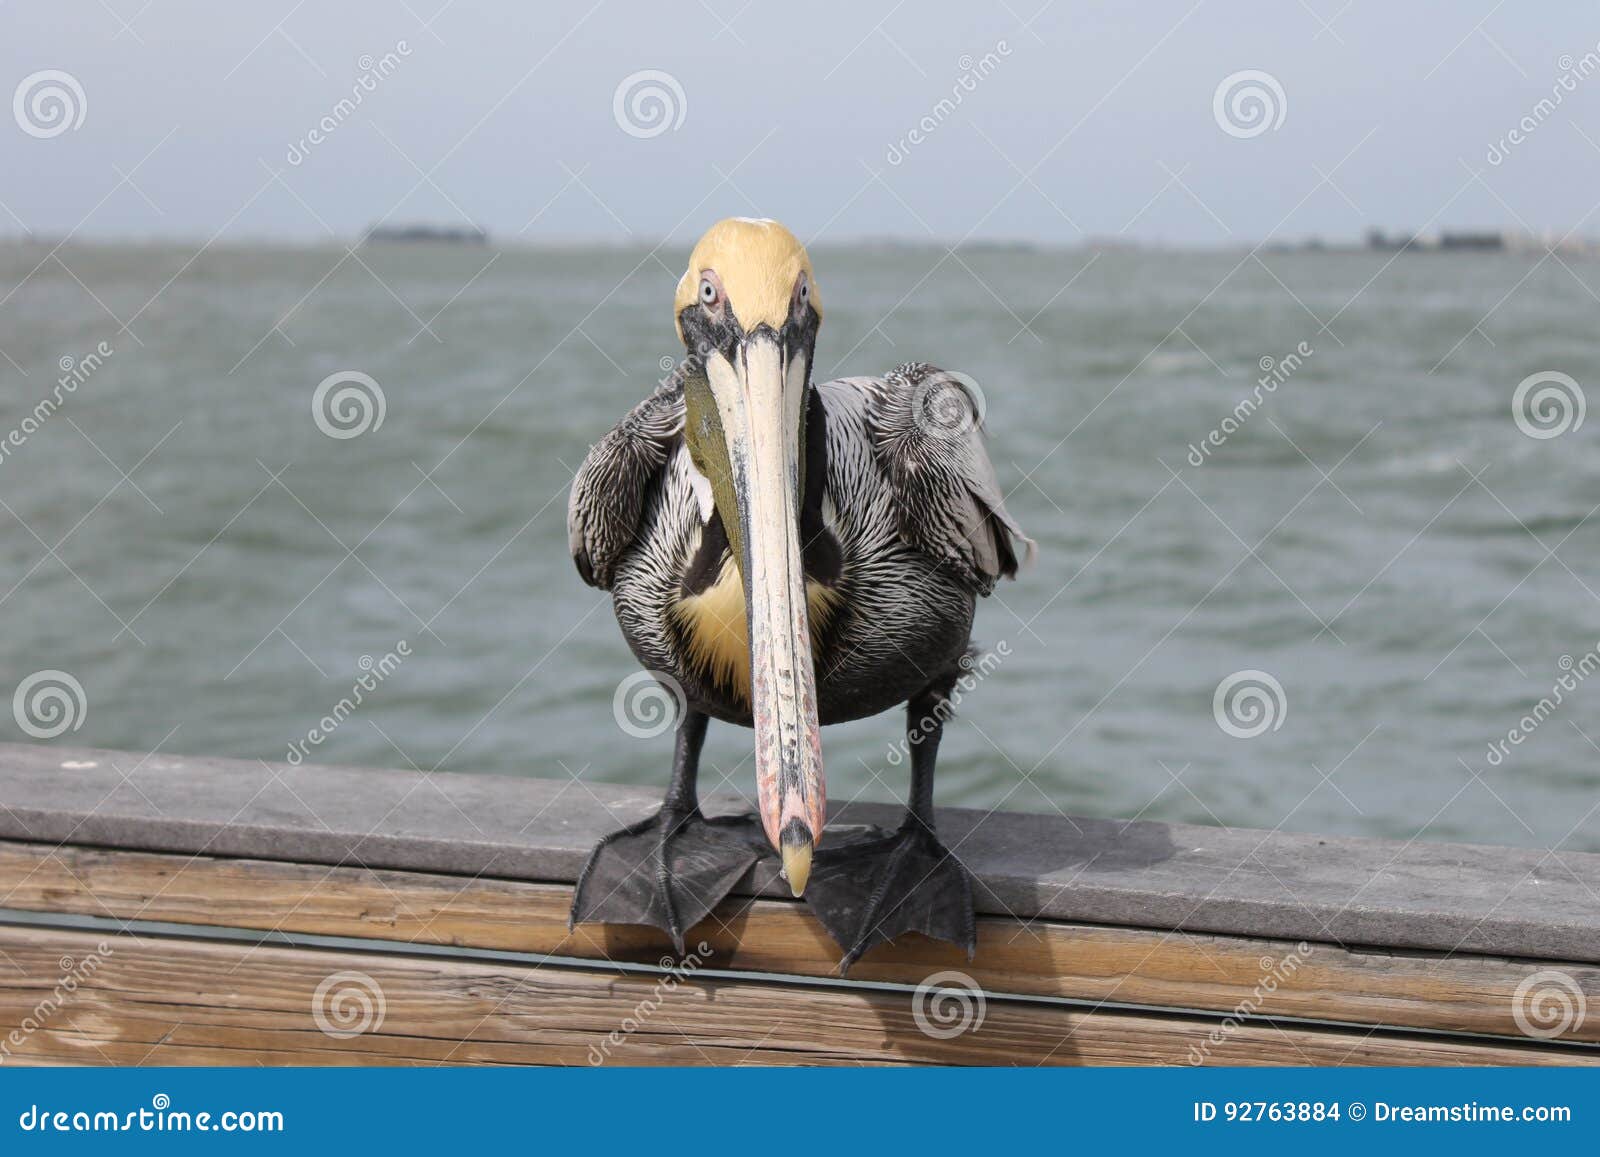 pelican, birds, natural habitat, florida birds, pier birds, muelle, puerto, bird